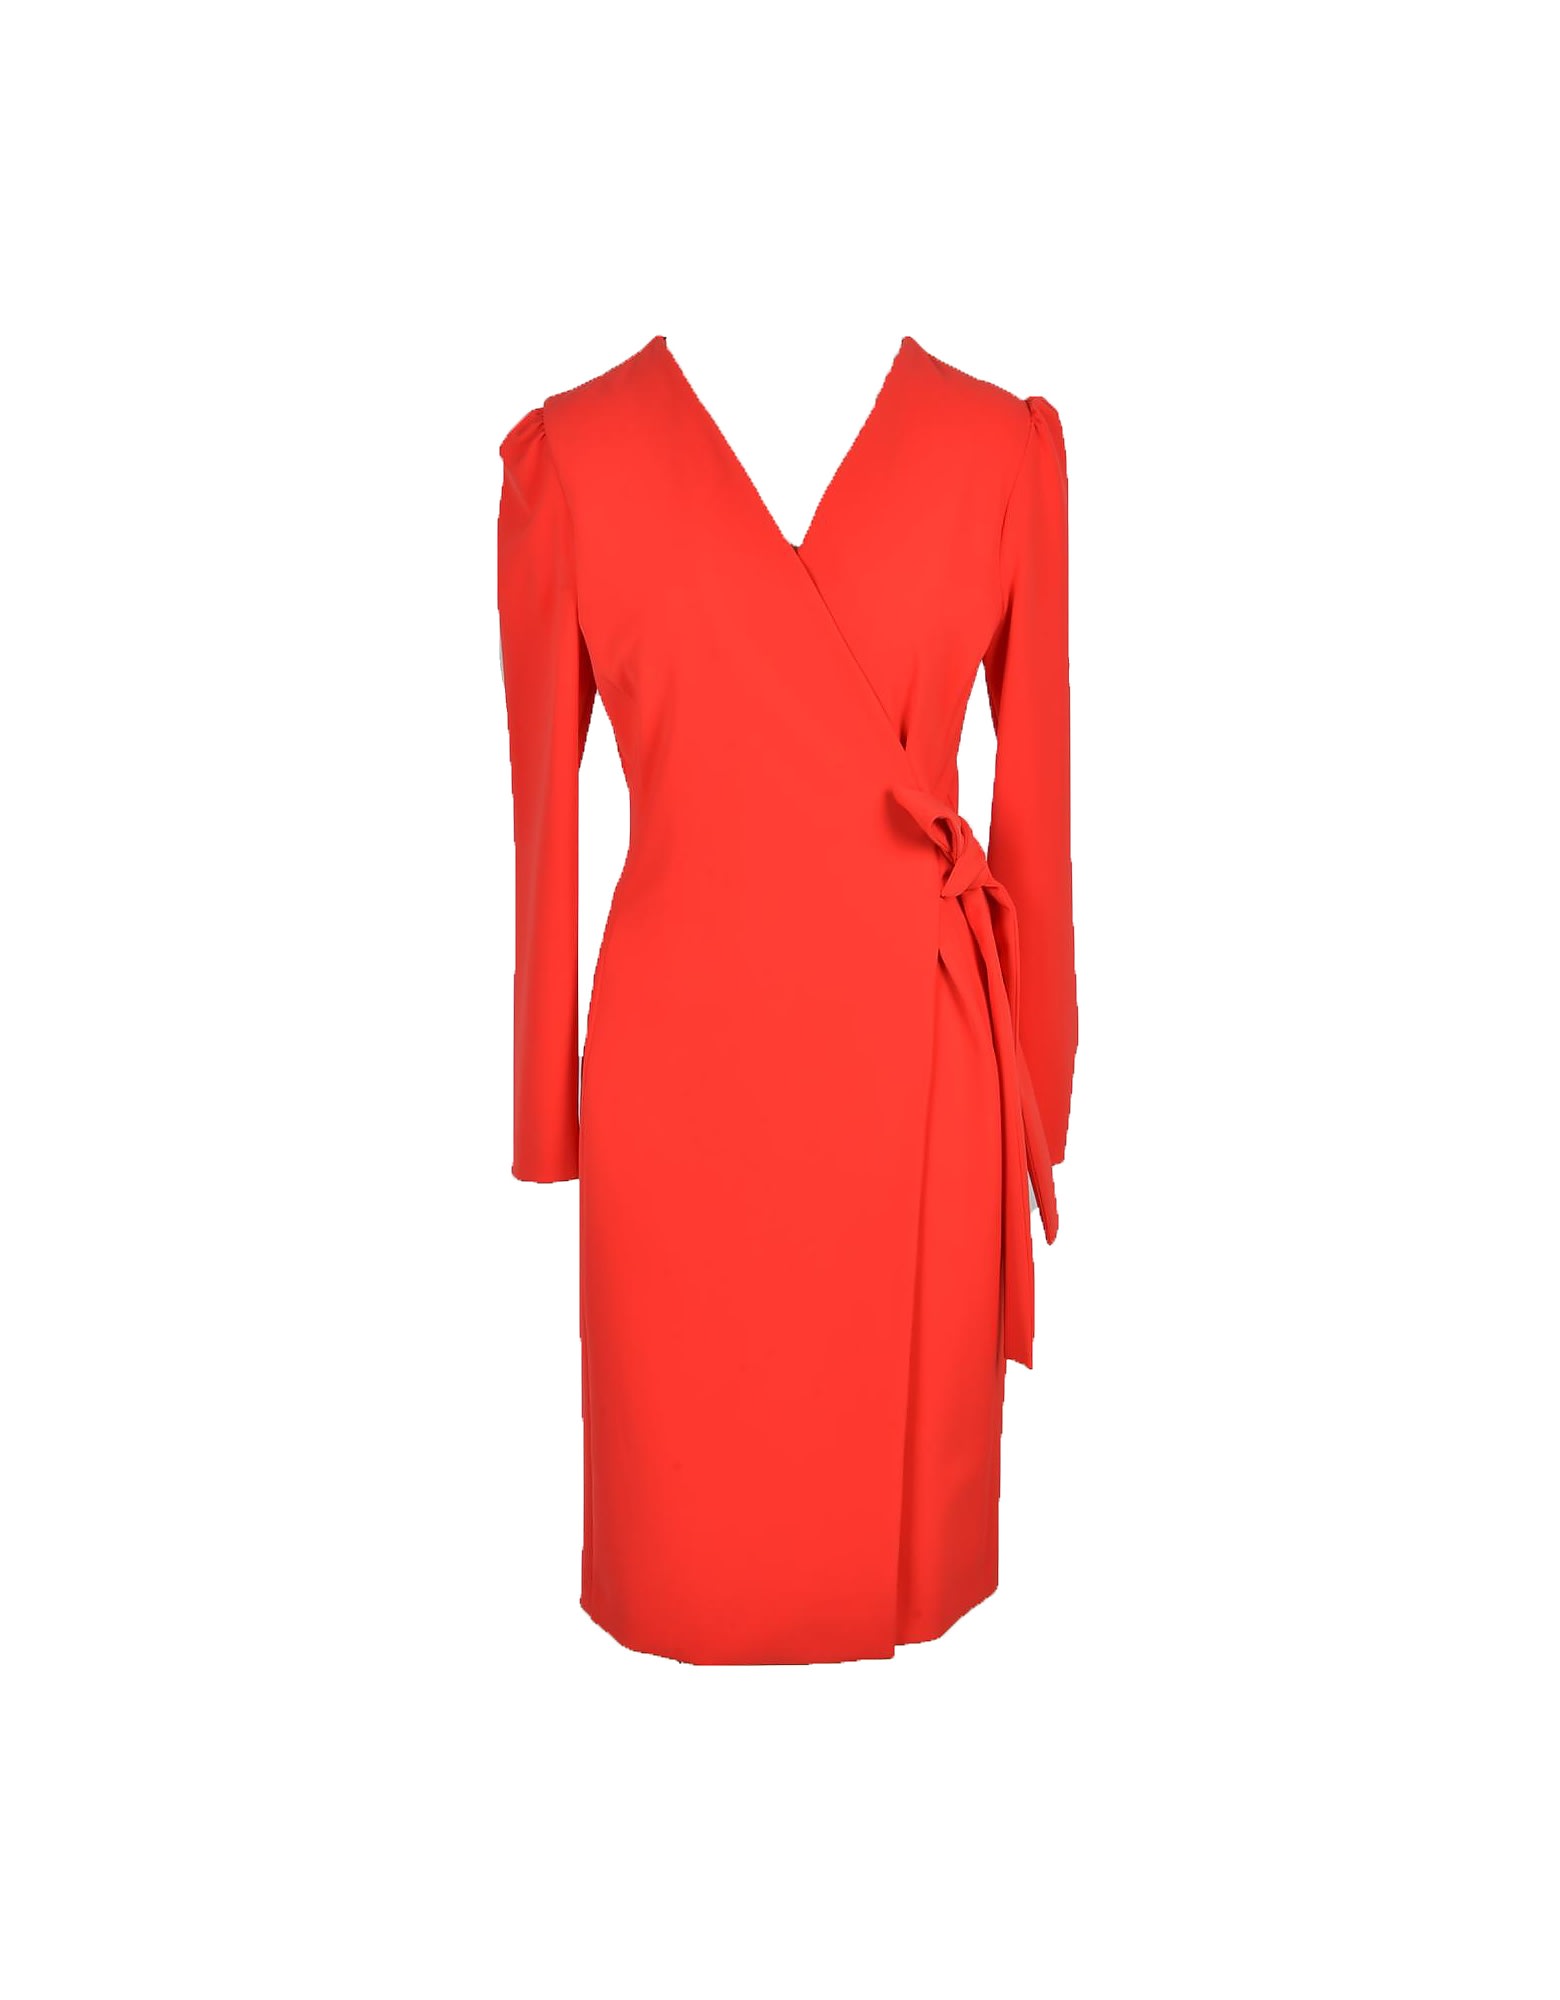 Moschino Womens Red Dress